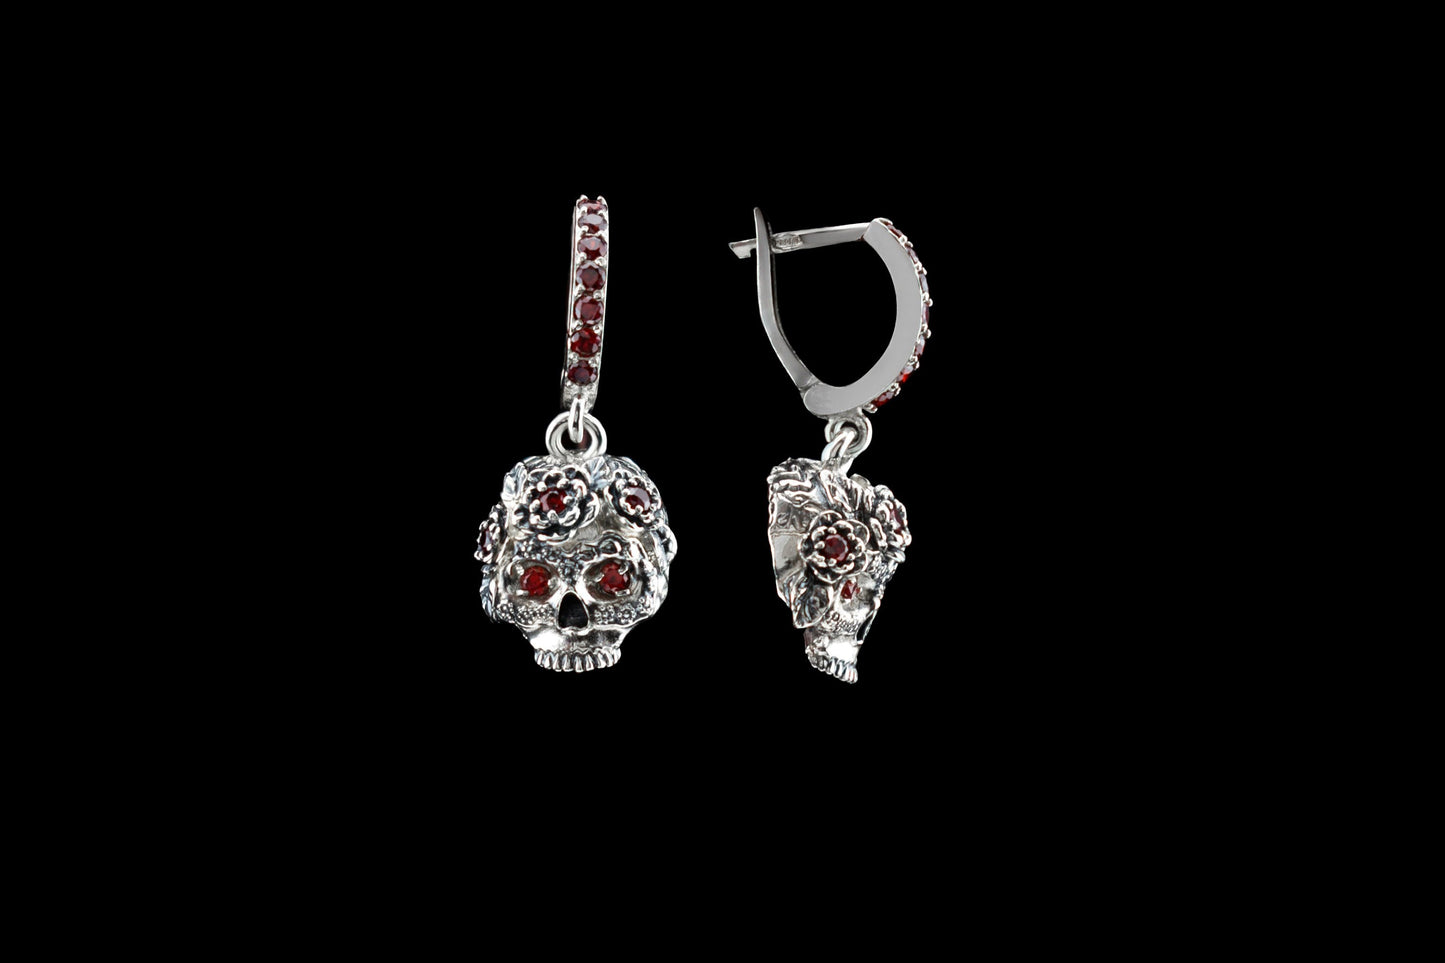 925 steeling silver skull earrings  Skull women jewelry Gothic jewelry Red gemstones Women skull earring Biker jewelry